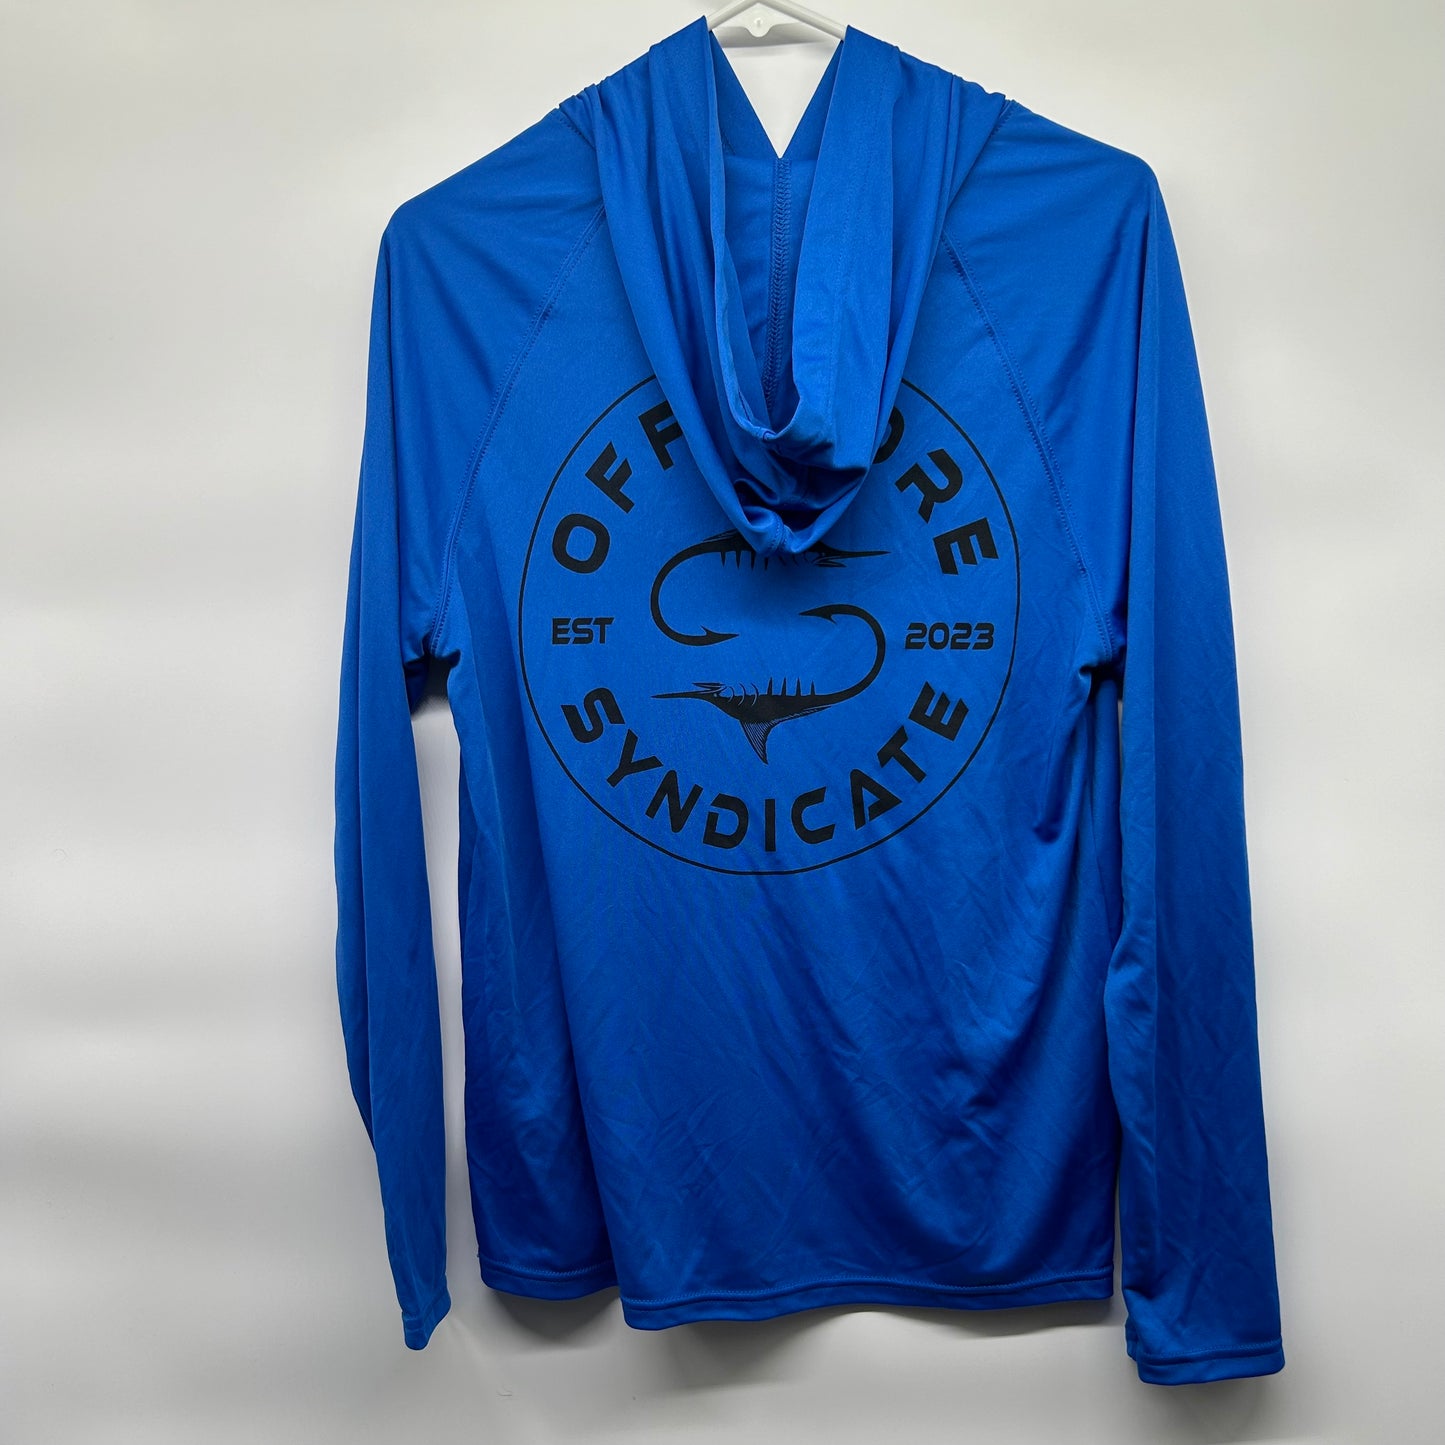 Royal blue UPF hoodie